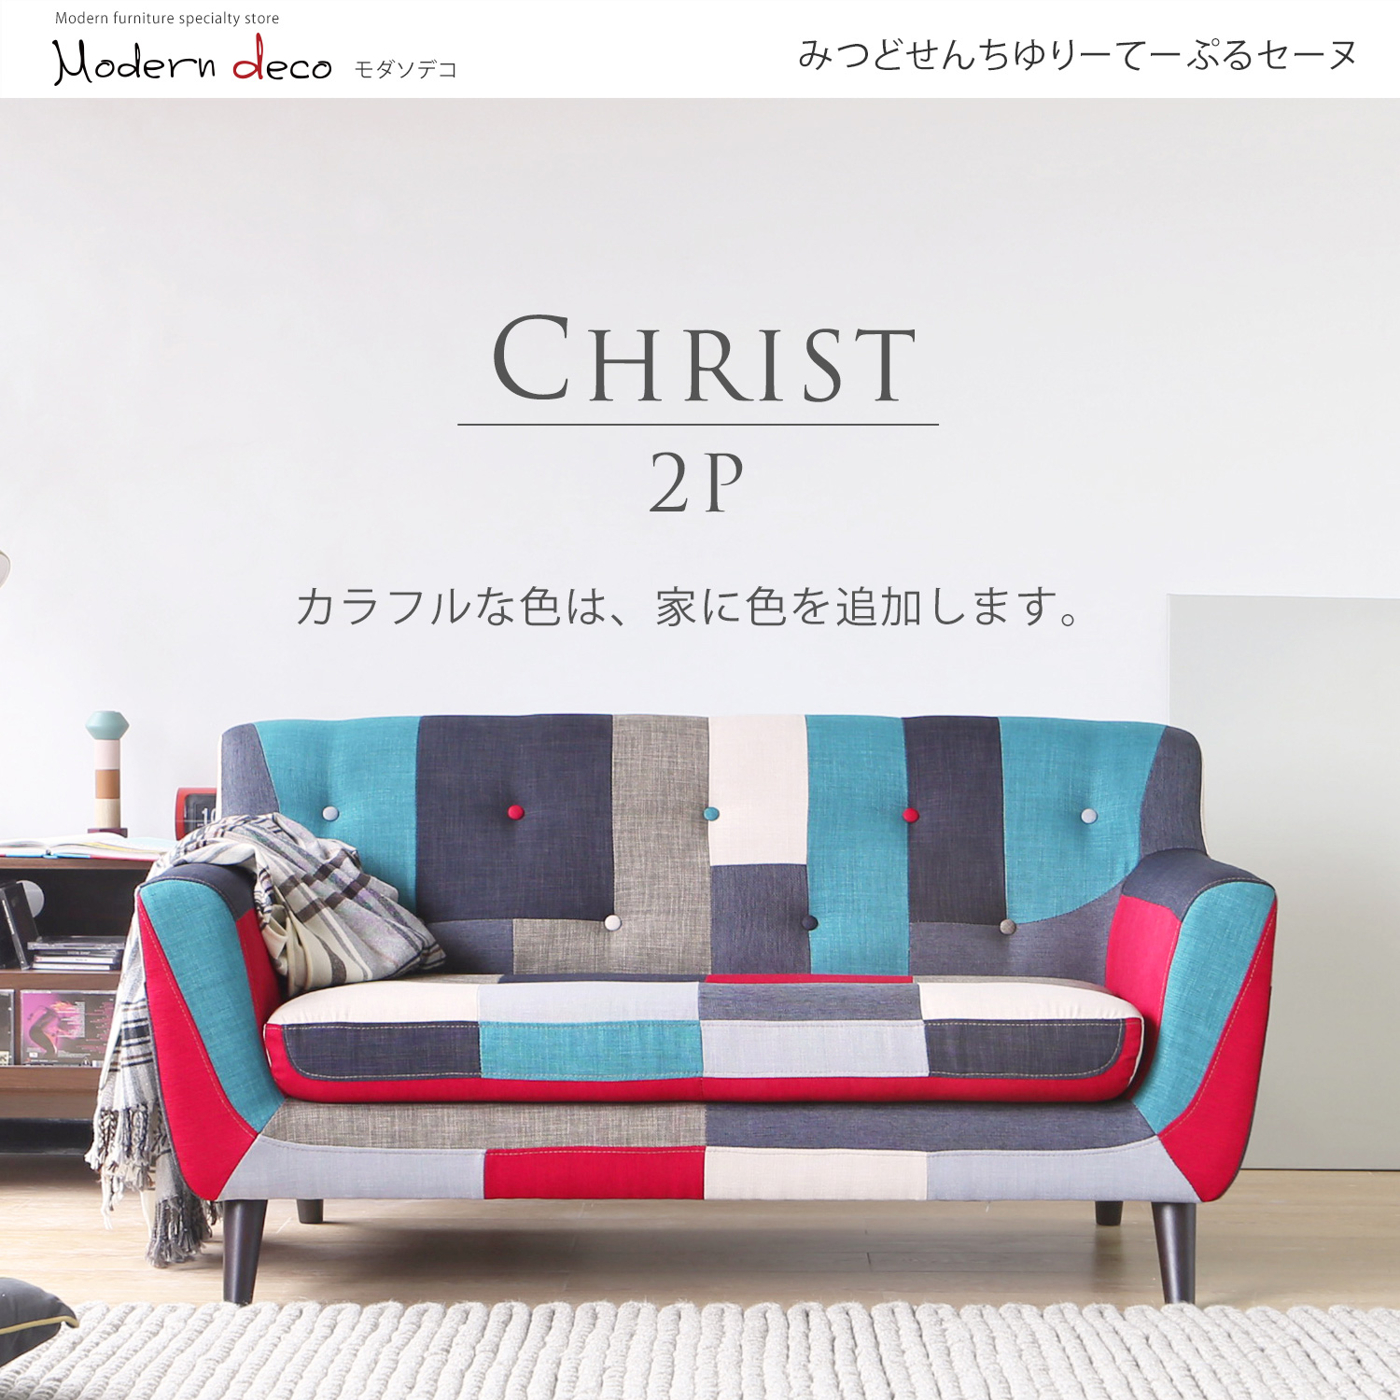 【日本品牌MODERN DECO】克里斯藍色拼布雙人沙發/H&D東稻家居